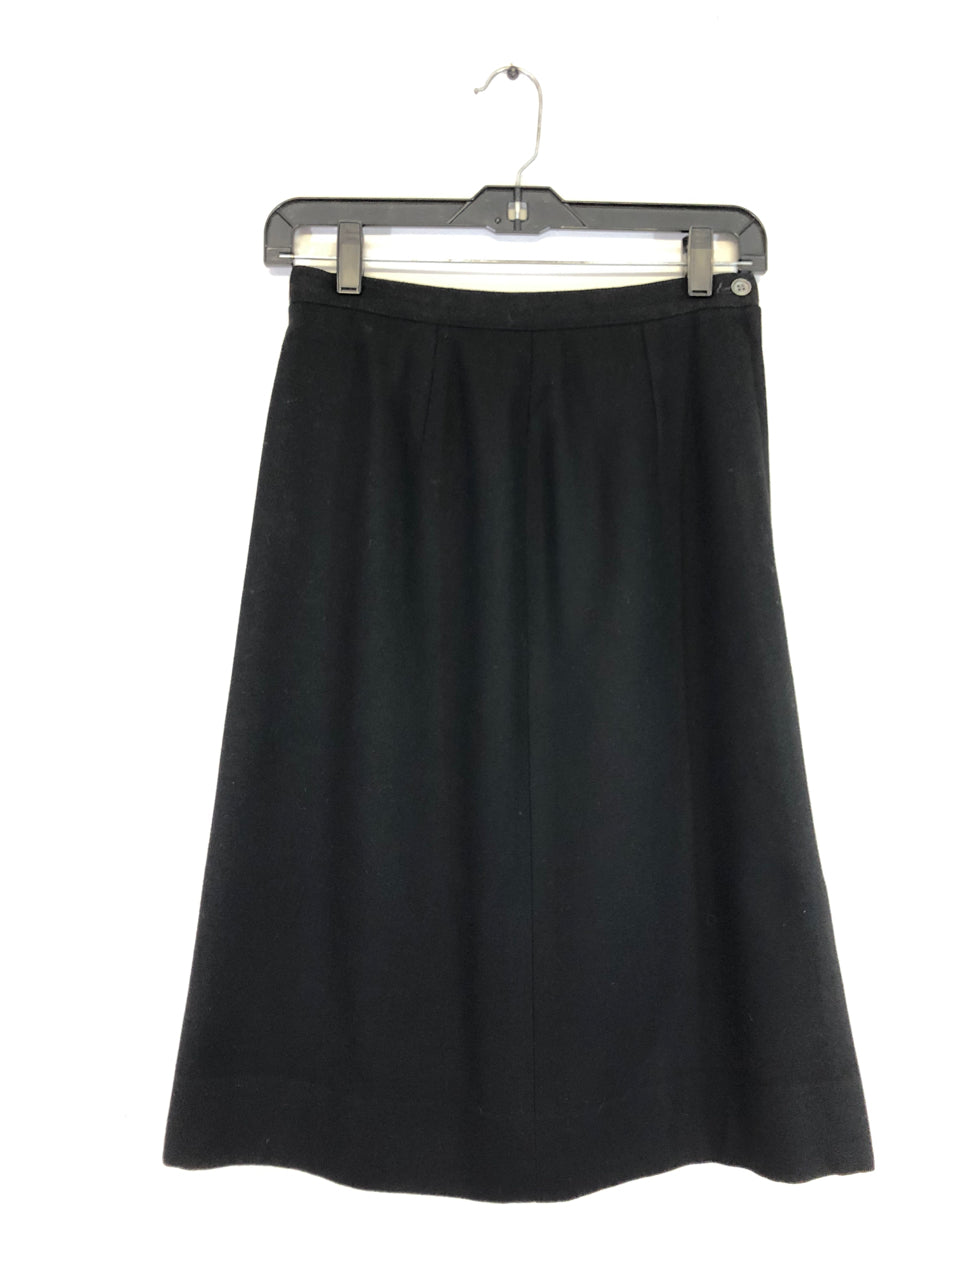 The Villager Black Wool Skirt